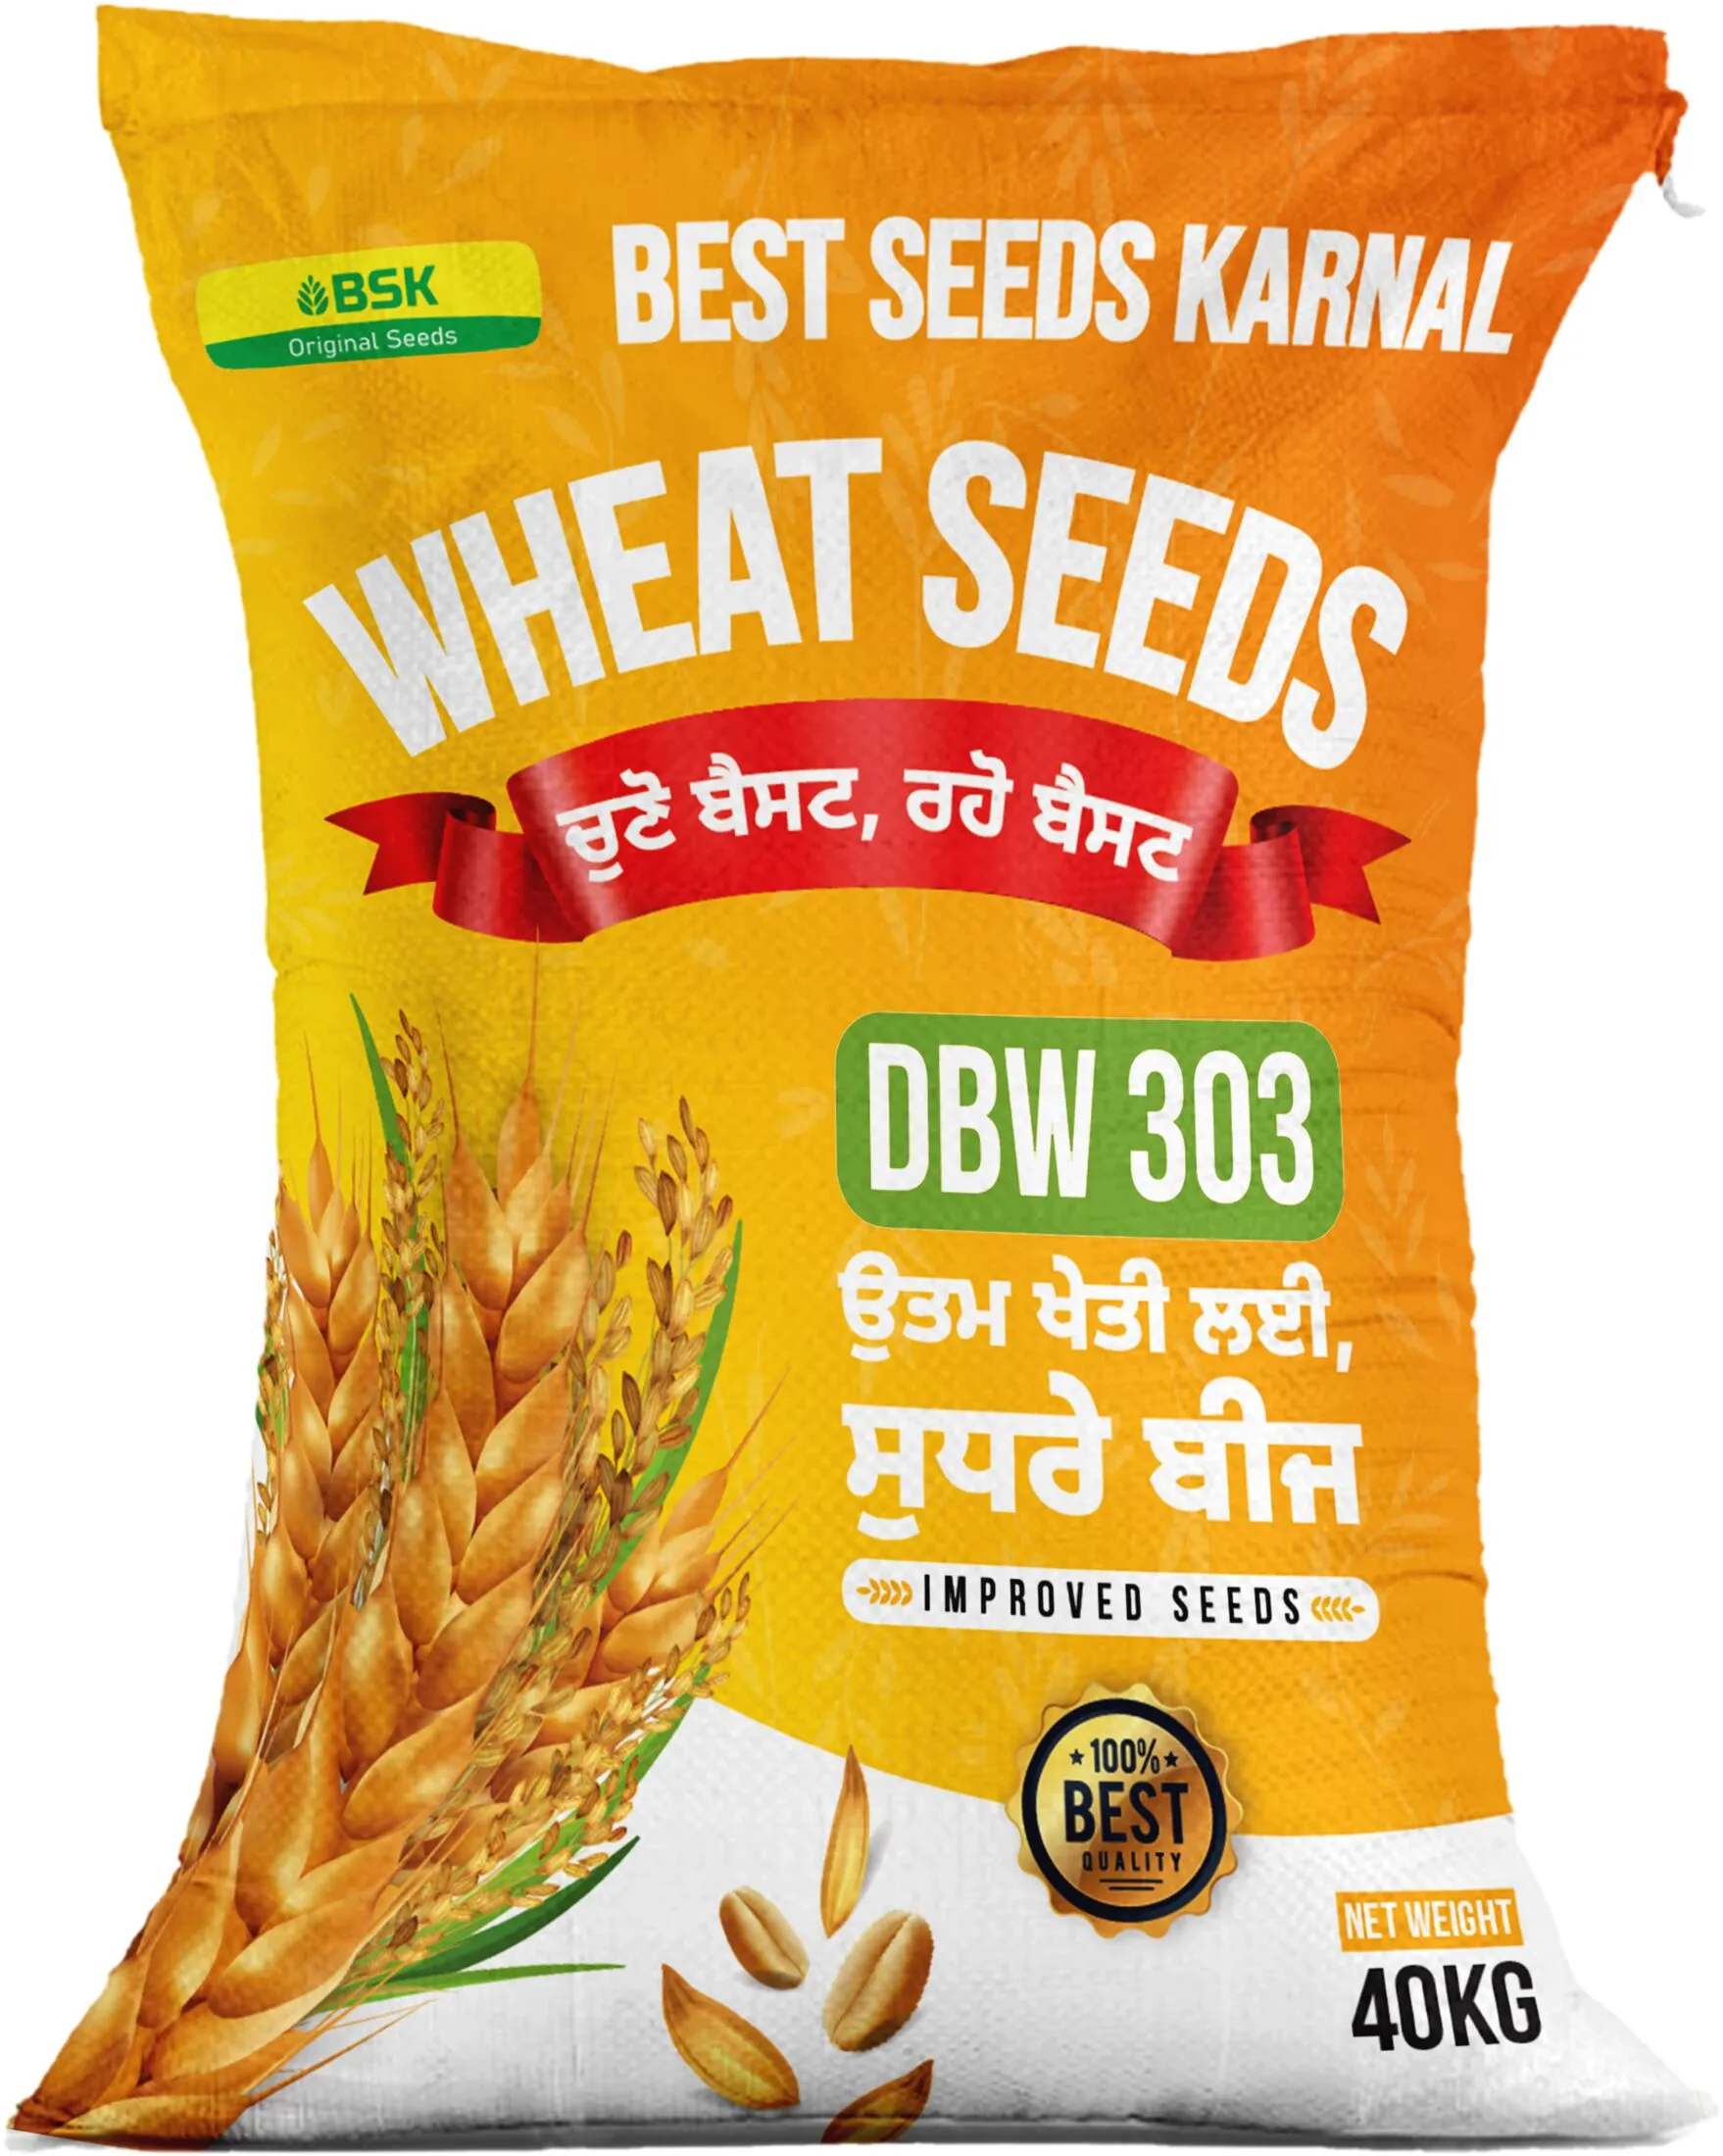 DBW 303  Verity Wheat Seeds from Best seeds Karanl